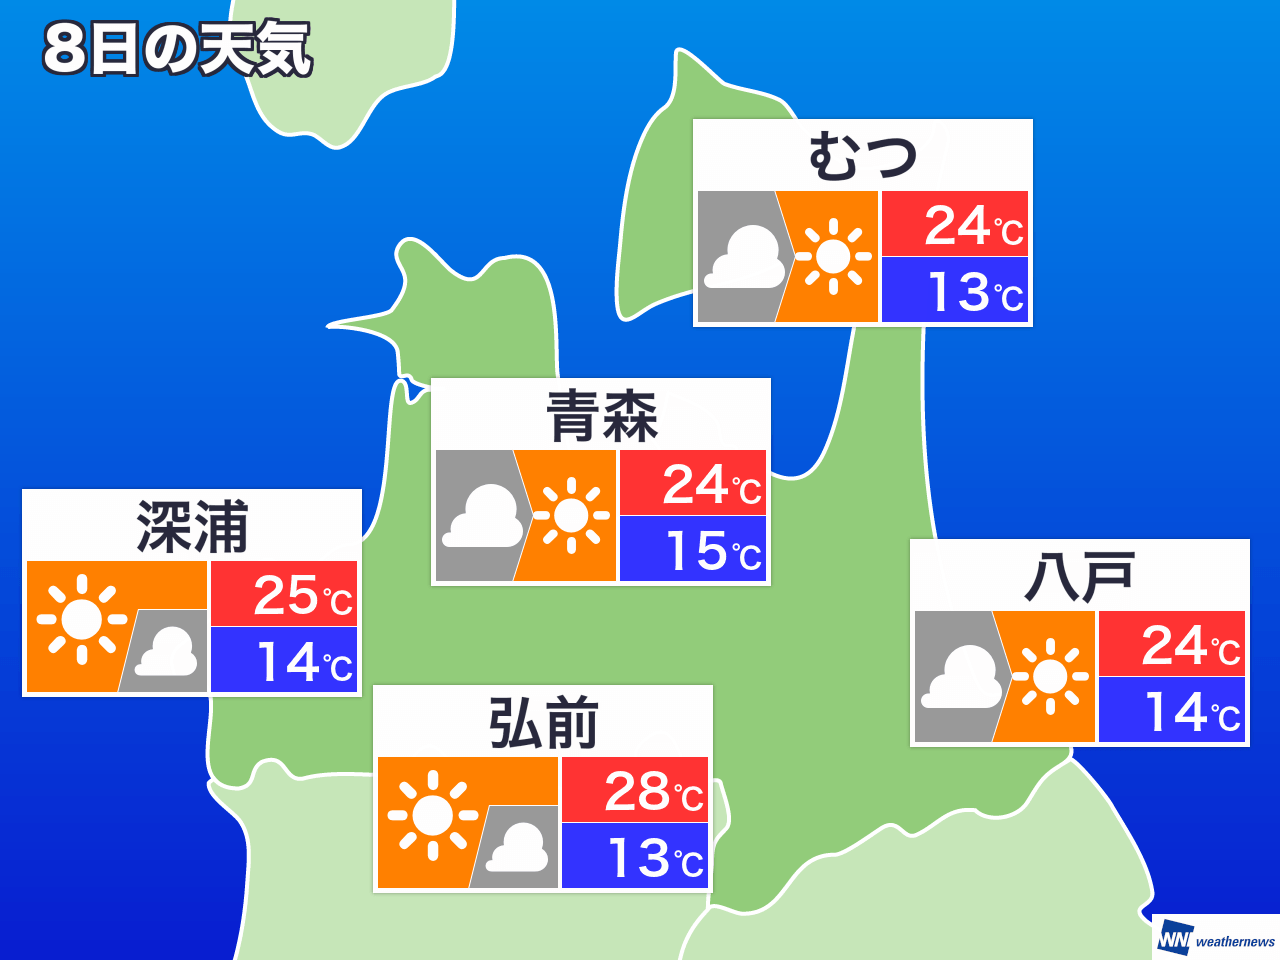 1月1日 水 青森県の今日の天気 ウェザーニュース